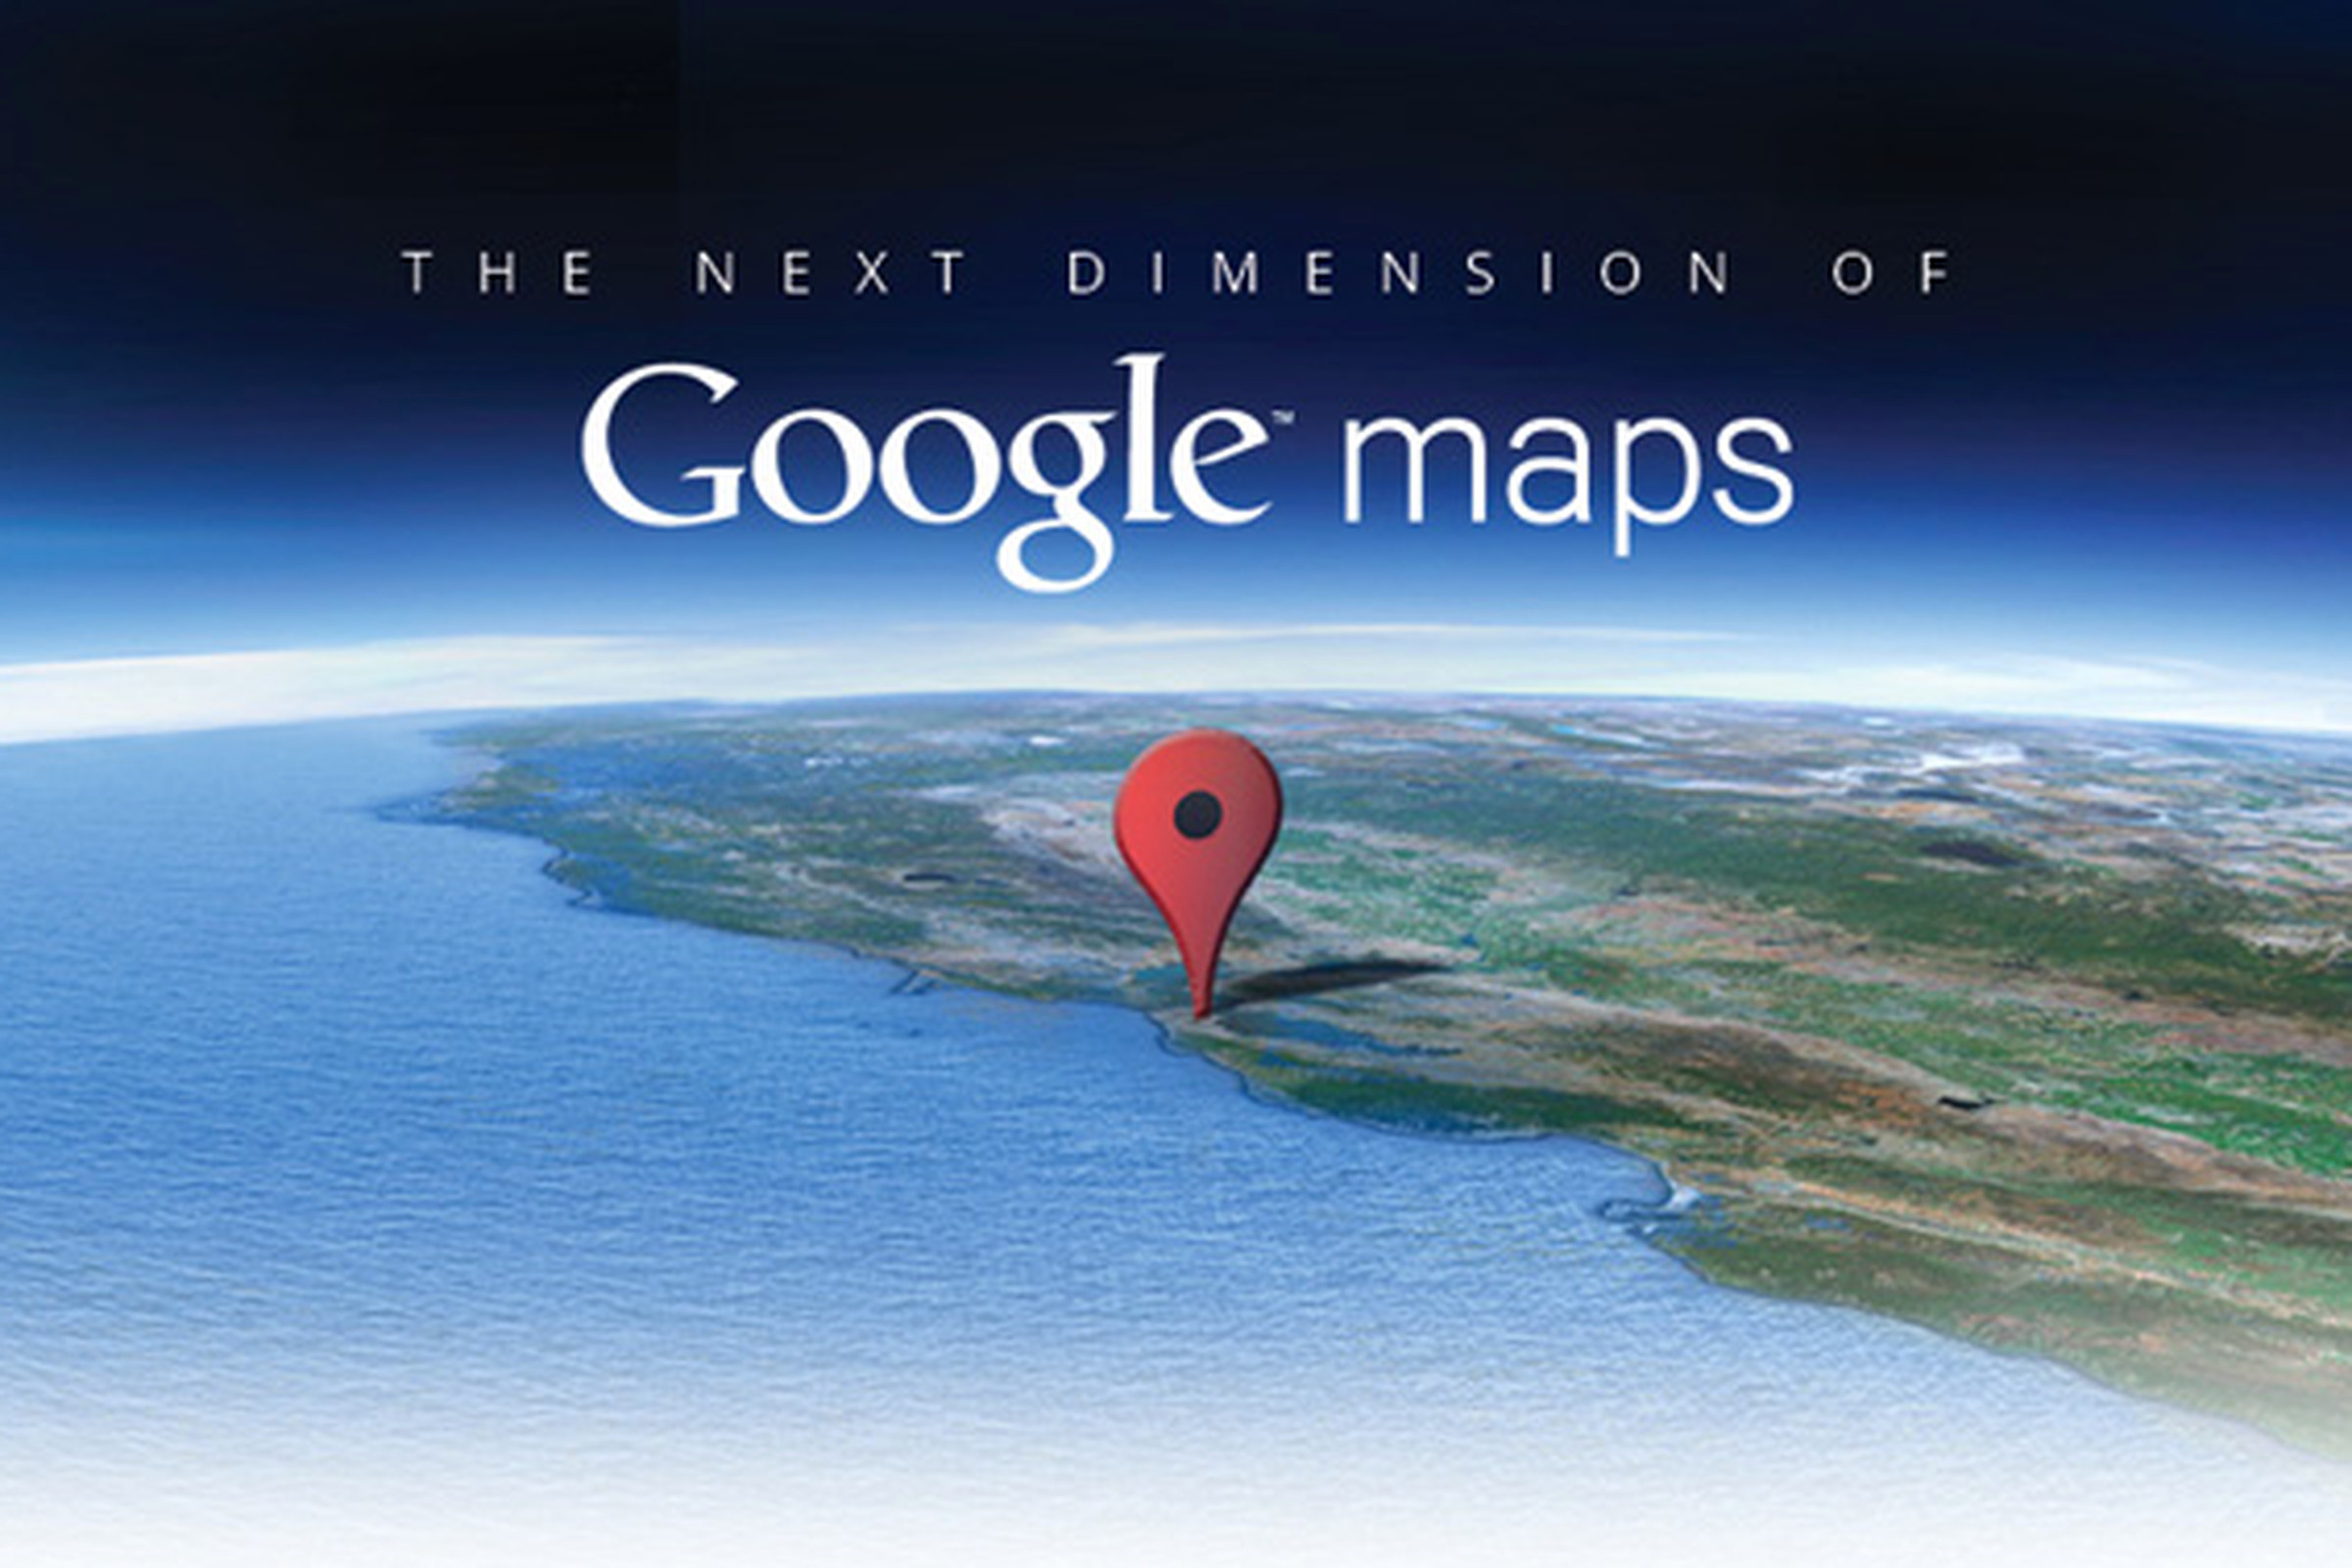 Google Maps invite